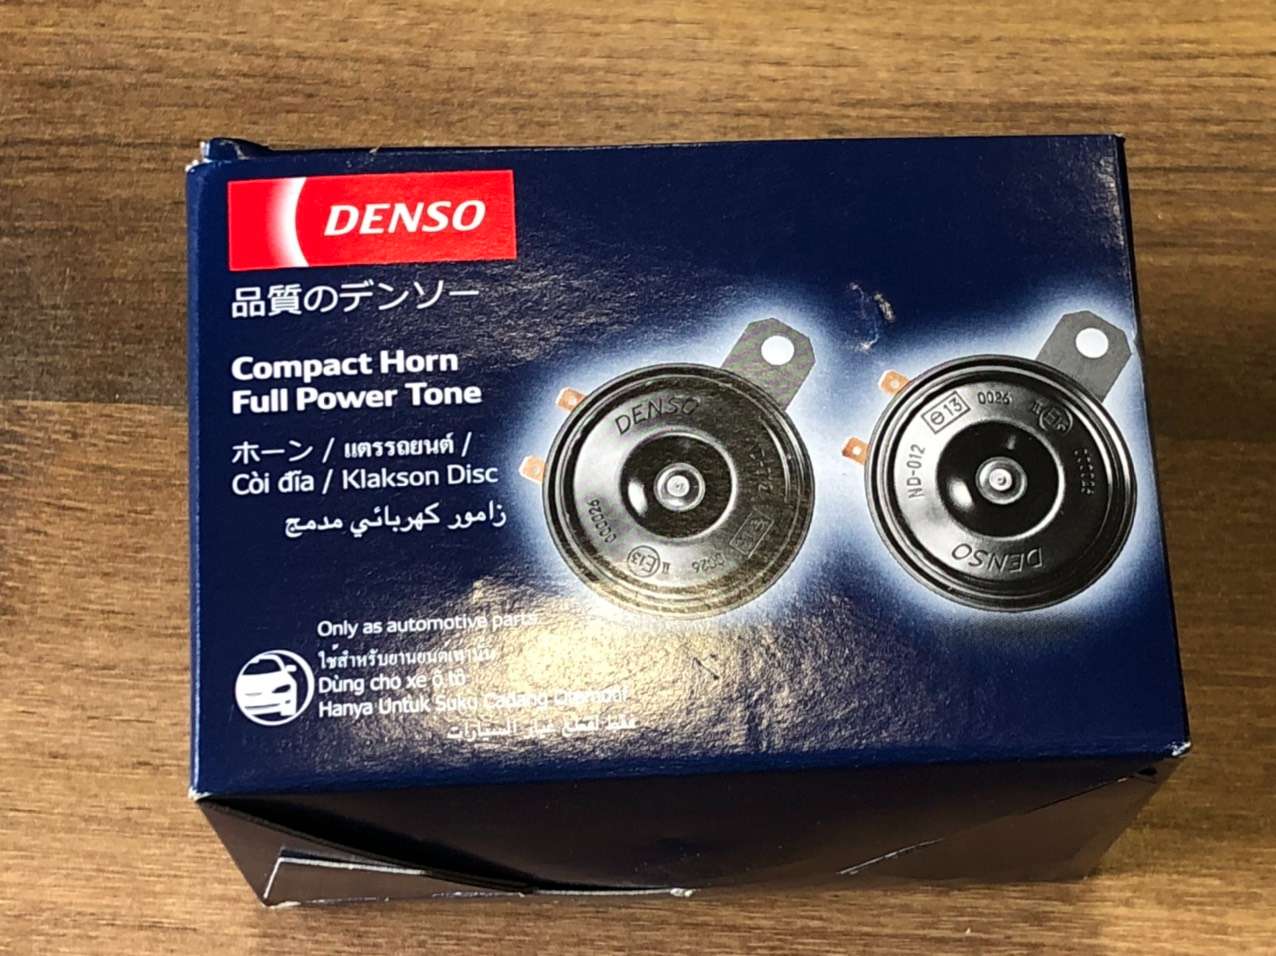 Còi đĩa Denso 12v 2 giắc (JK272000-6910) hàng chính hãng cho nhiều loại xe ôtô